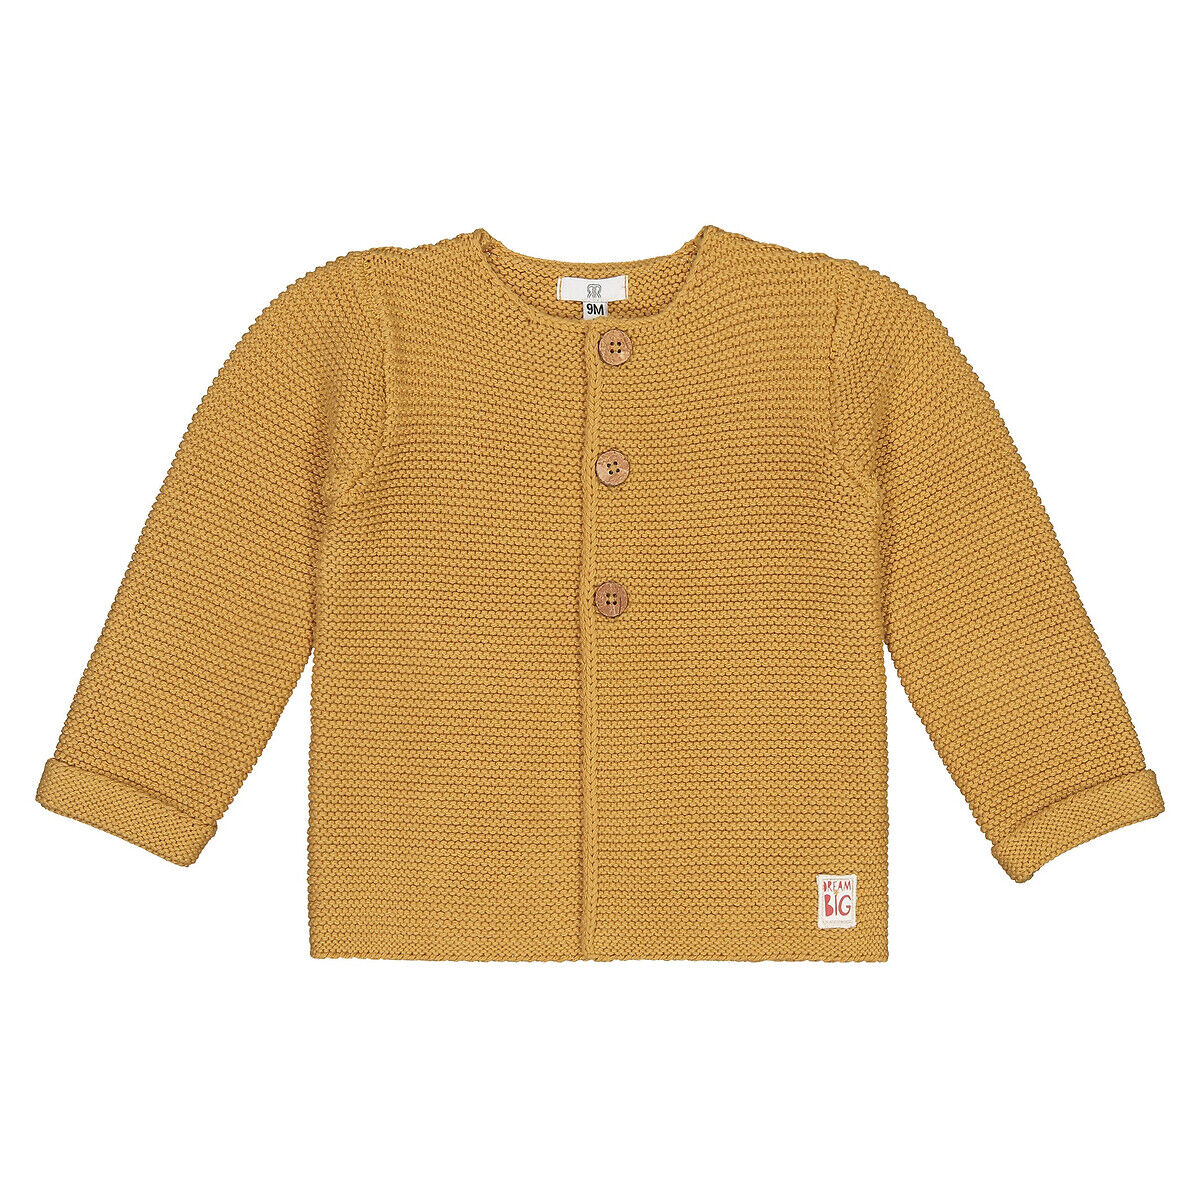 La Redoute Collections Casaco em tricot, com botões, em algodão bio, prematuro-3 anos   Amarelo